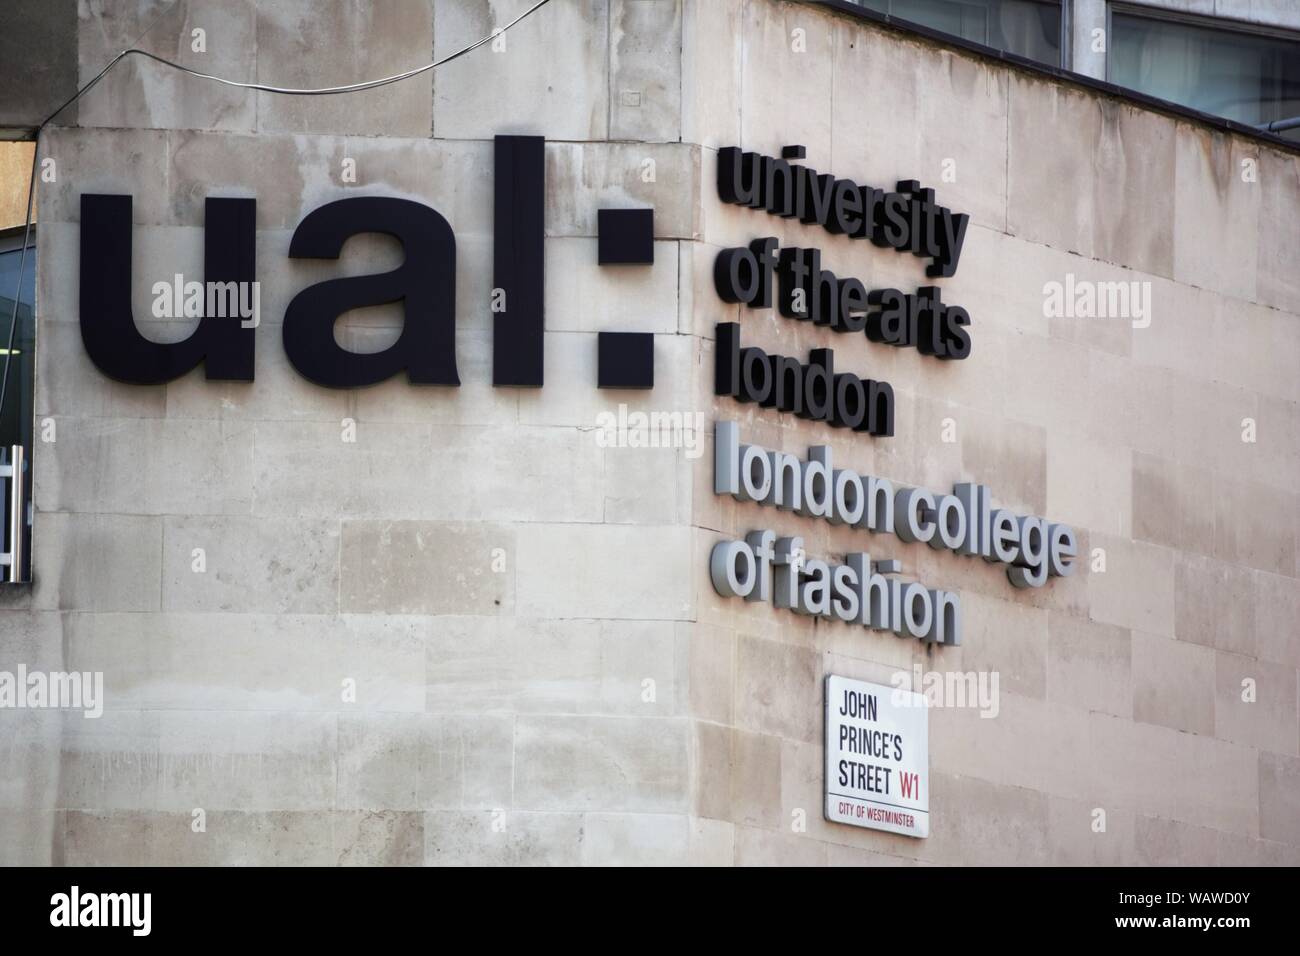 Logo de l'Université des Arts et London College of Fashion sur un mur d'un bâtiment à Oxford Street, London, UK Banque D'Images